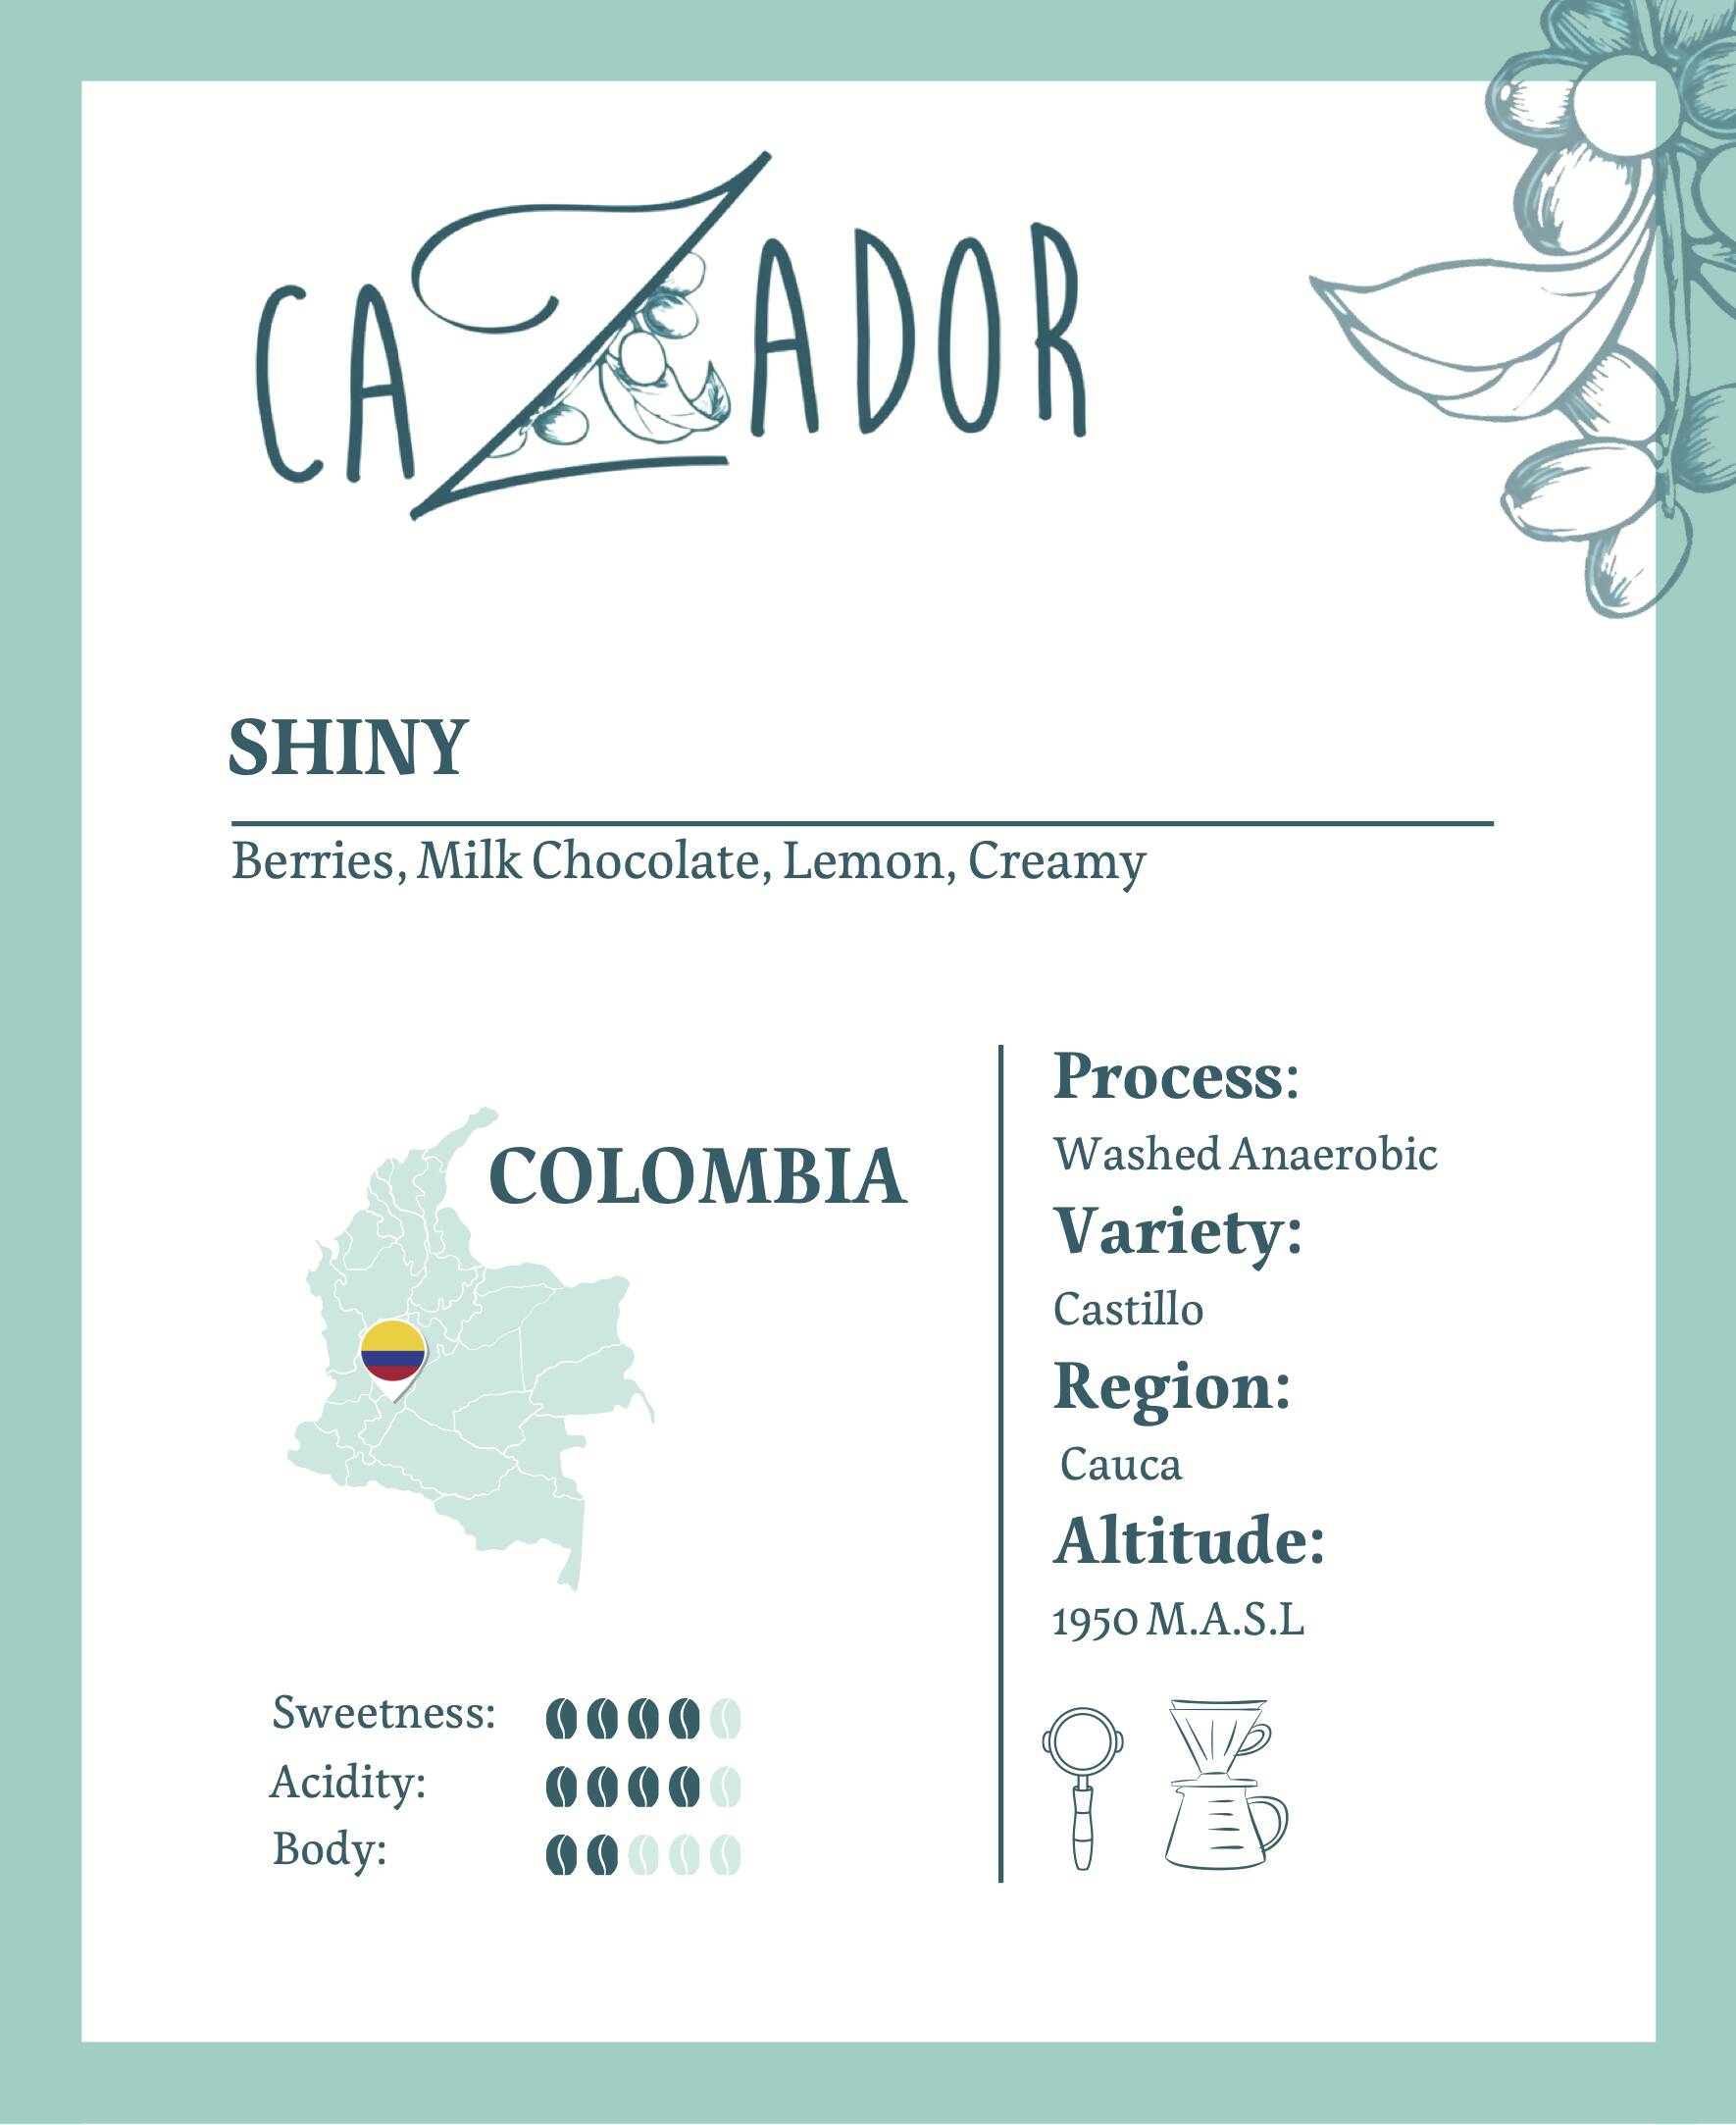 Colombia Shiny Cauca